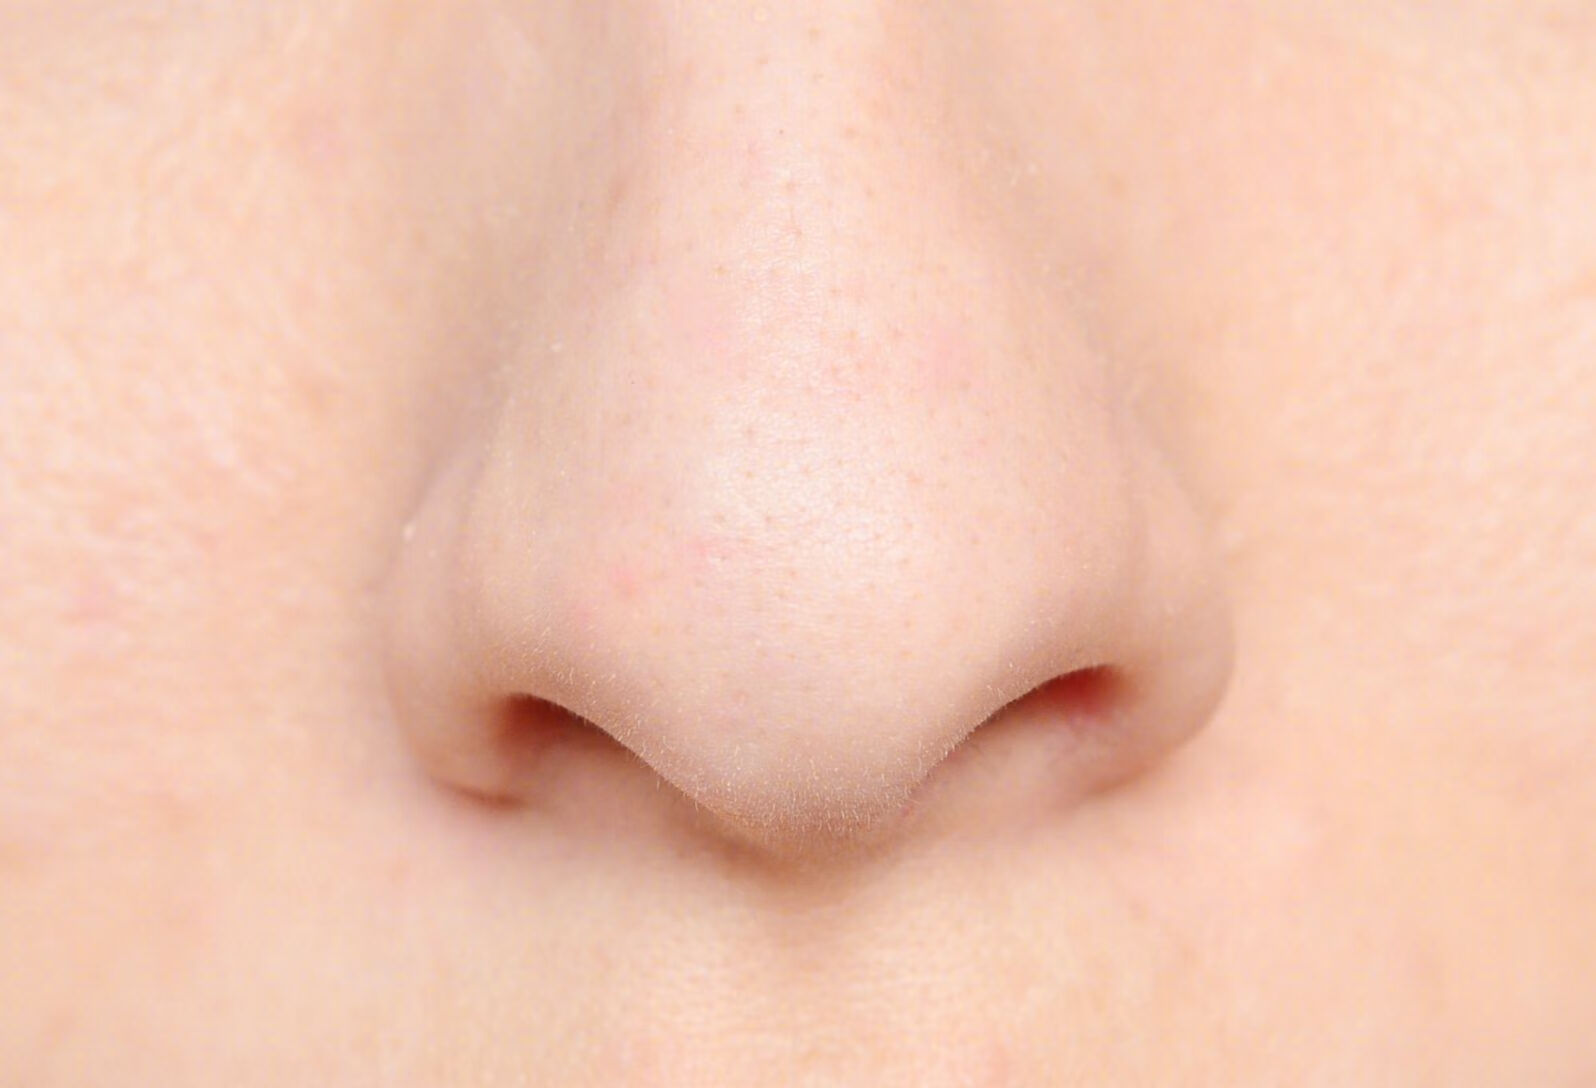 经常被眼袋泪沟以及鼻基底凹陷的问题困扰，该怎么改善？